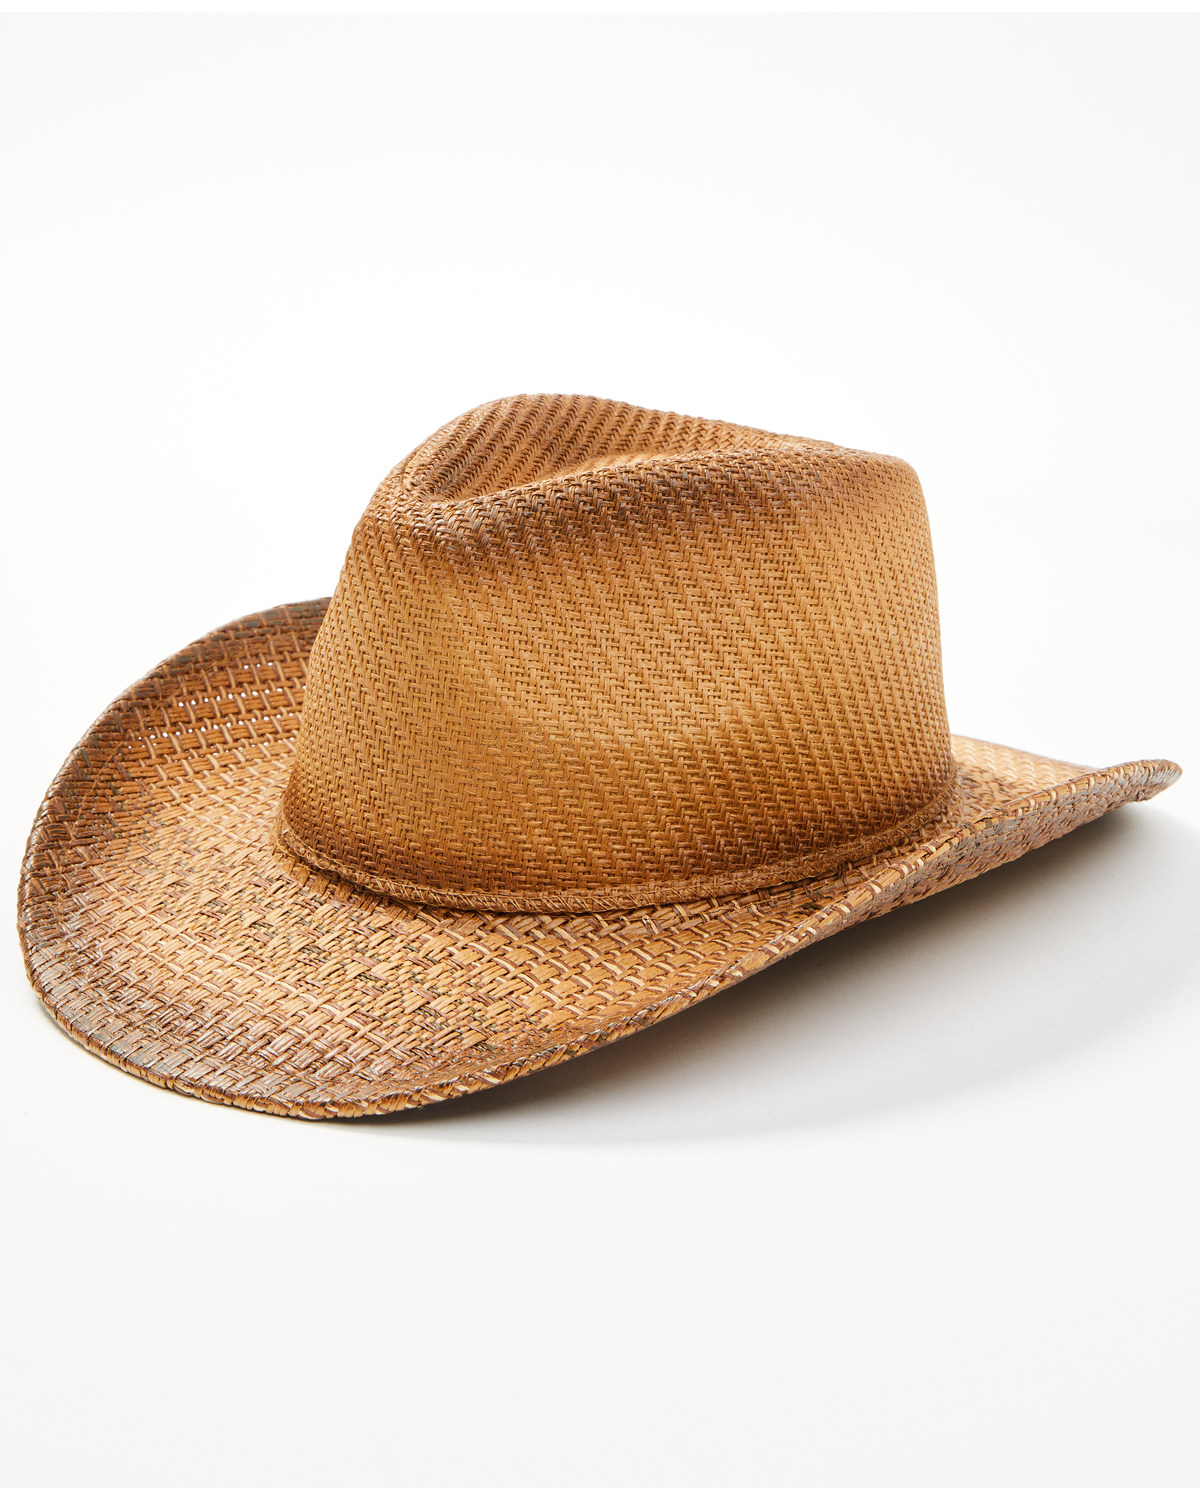 Cody James Kids' Rough Rider Straw Cowboy Hat